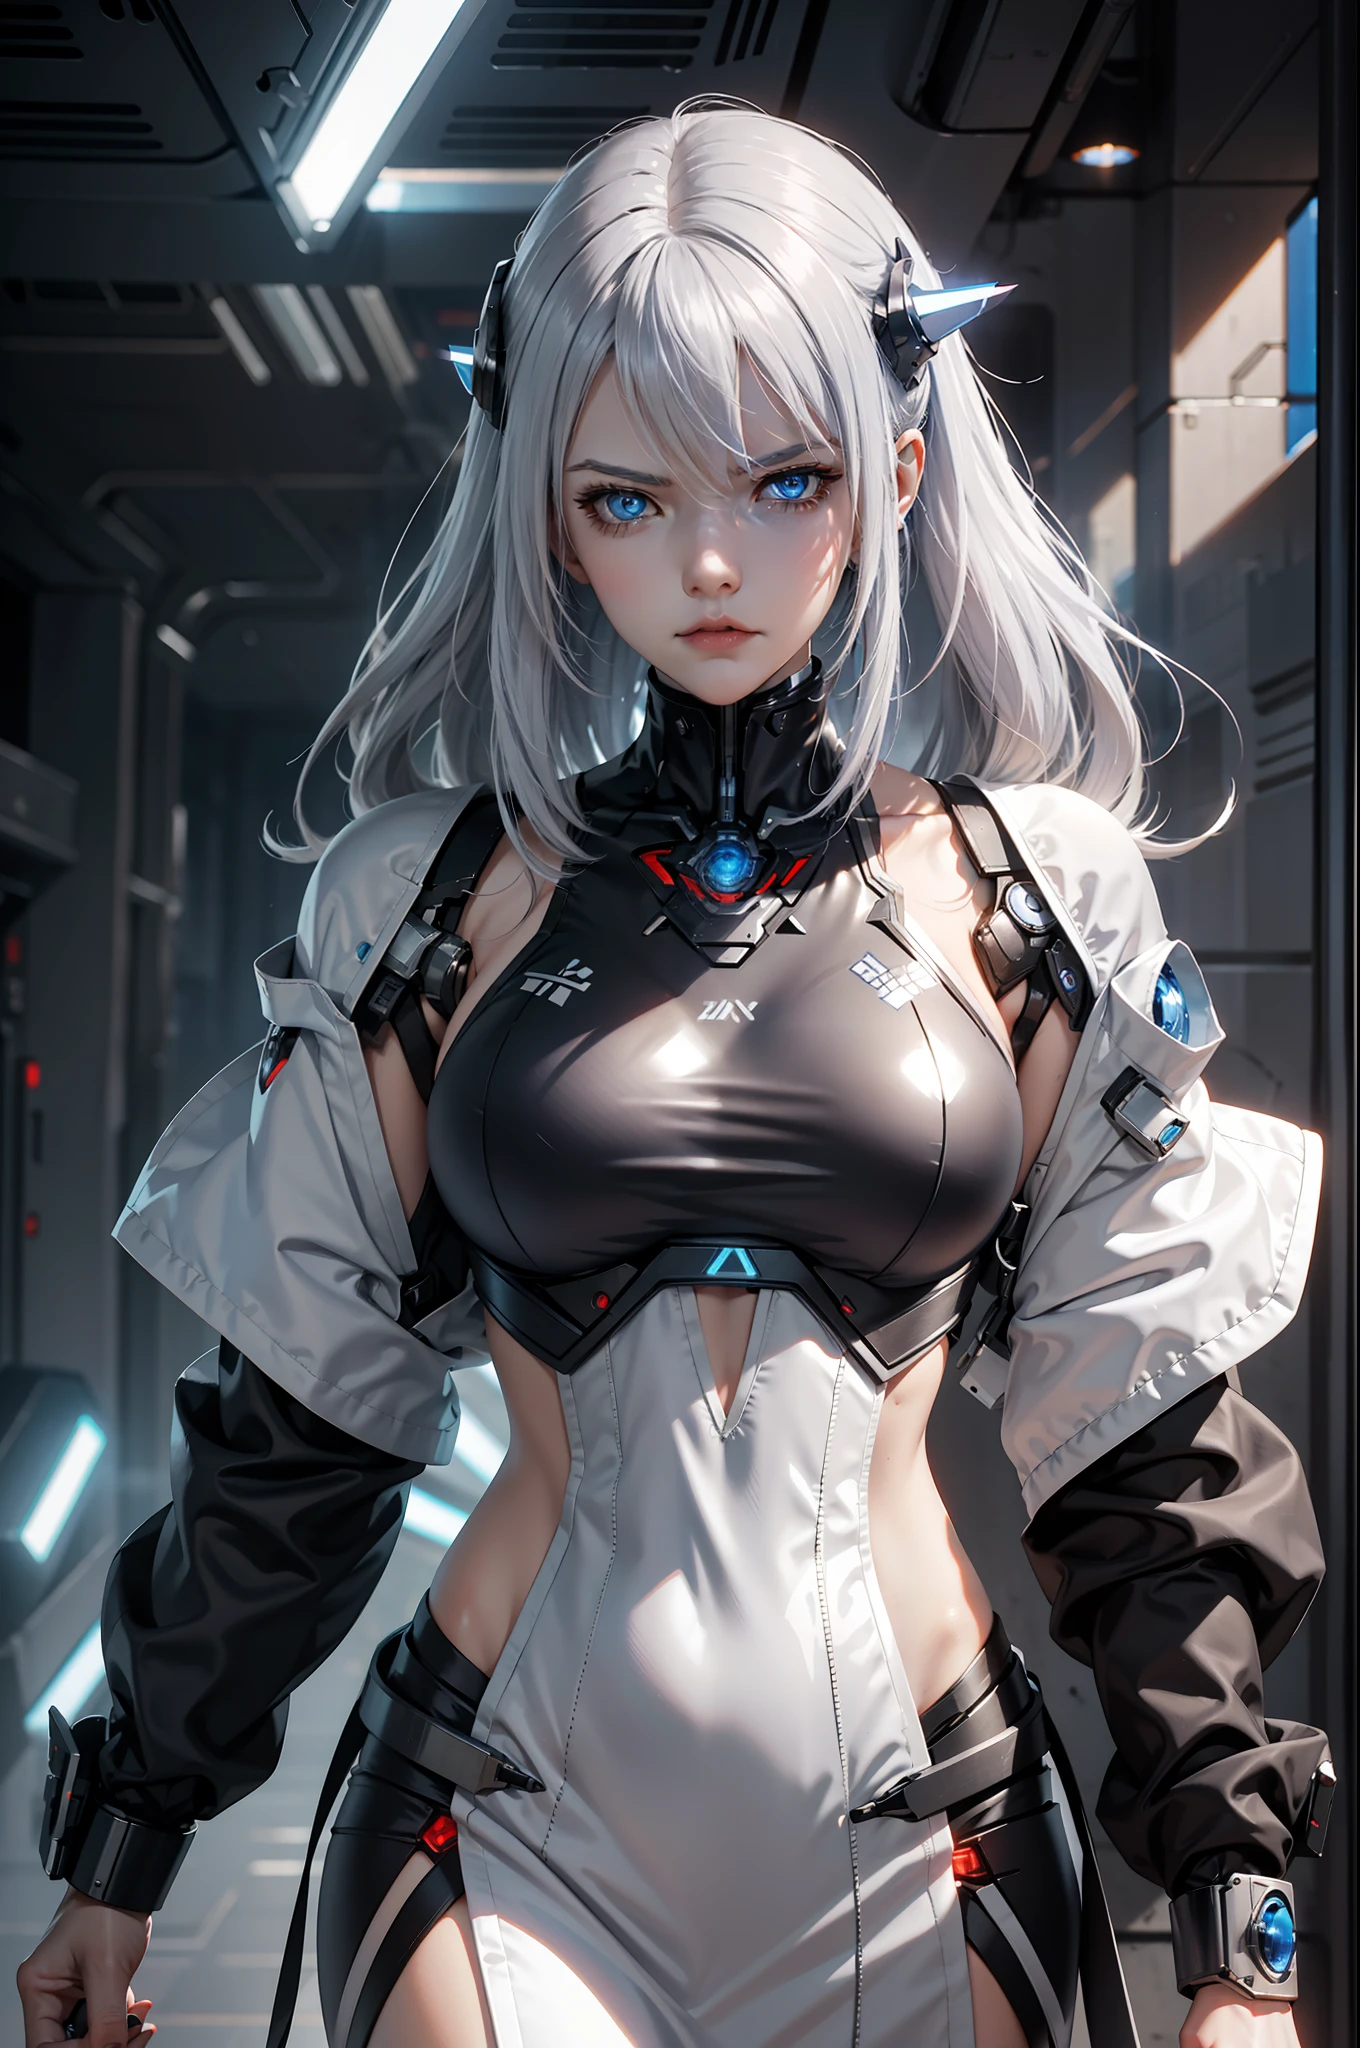 "Cyborg-Mädchen mit Schwert，silberne Haare und blaue Augen，Sci-Fi-Tapete，azur lane style，Cyberpunk mech girl，Wütende Cyborg-Frau，Kaputter schöner Roboter，SSSS.Gridman-Stil (2018)"